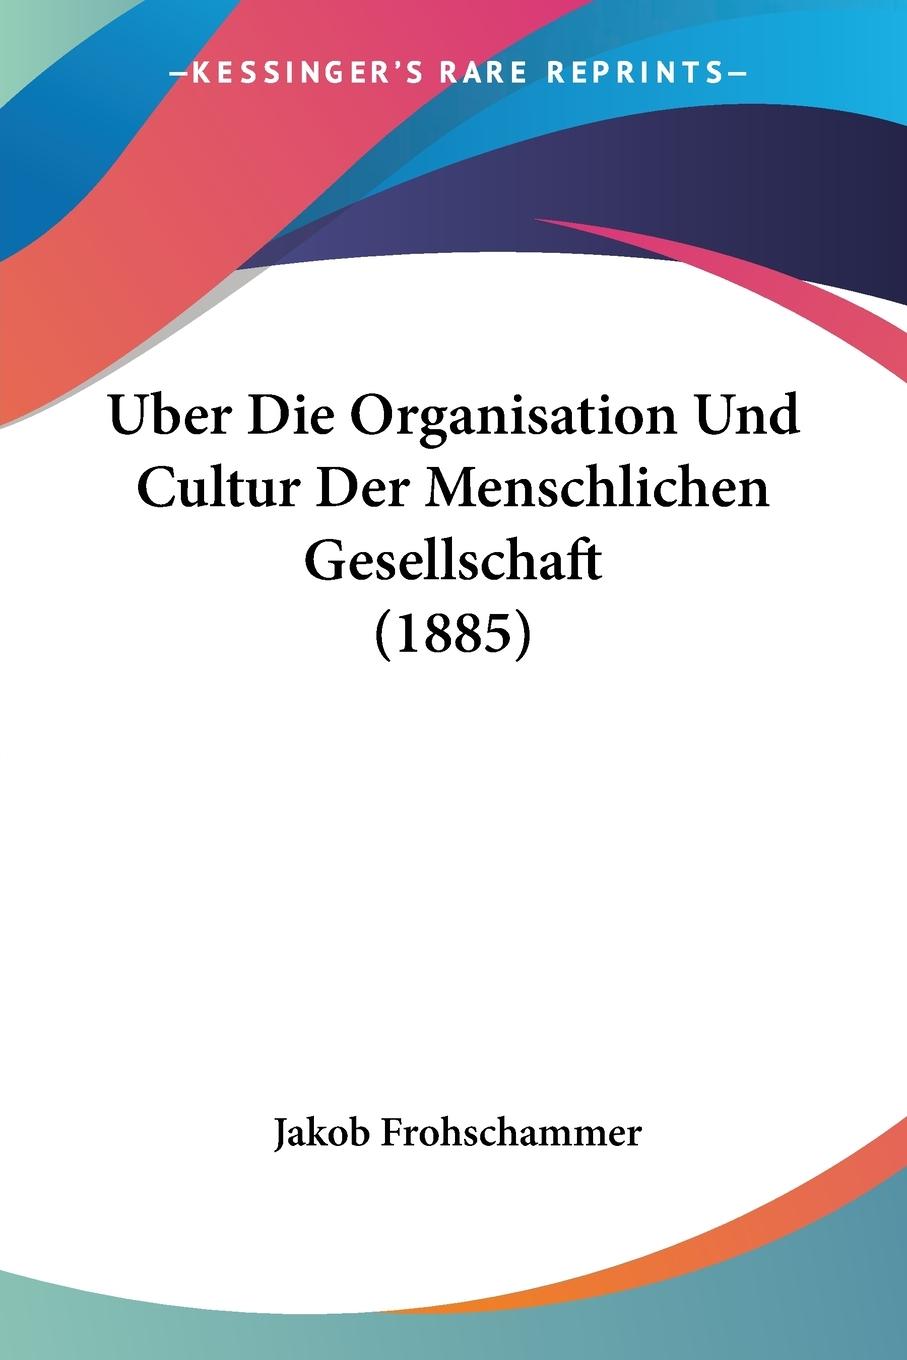 Uber Die Organisation Und Cultur Der Menschlichen Gesellschaft (1885) - Frohschammer, Jakob